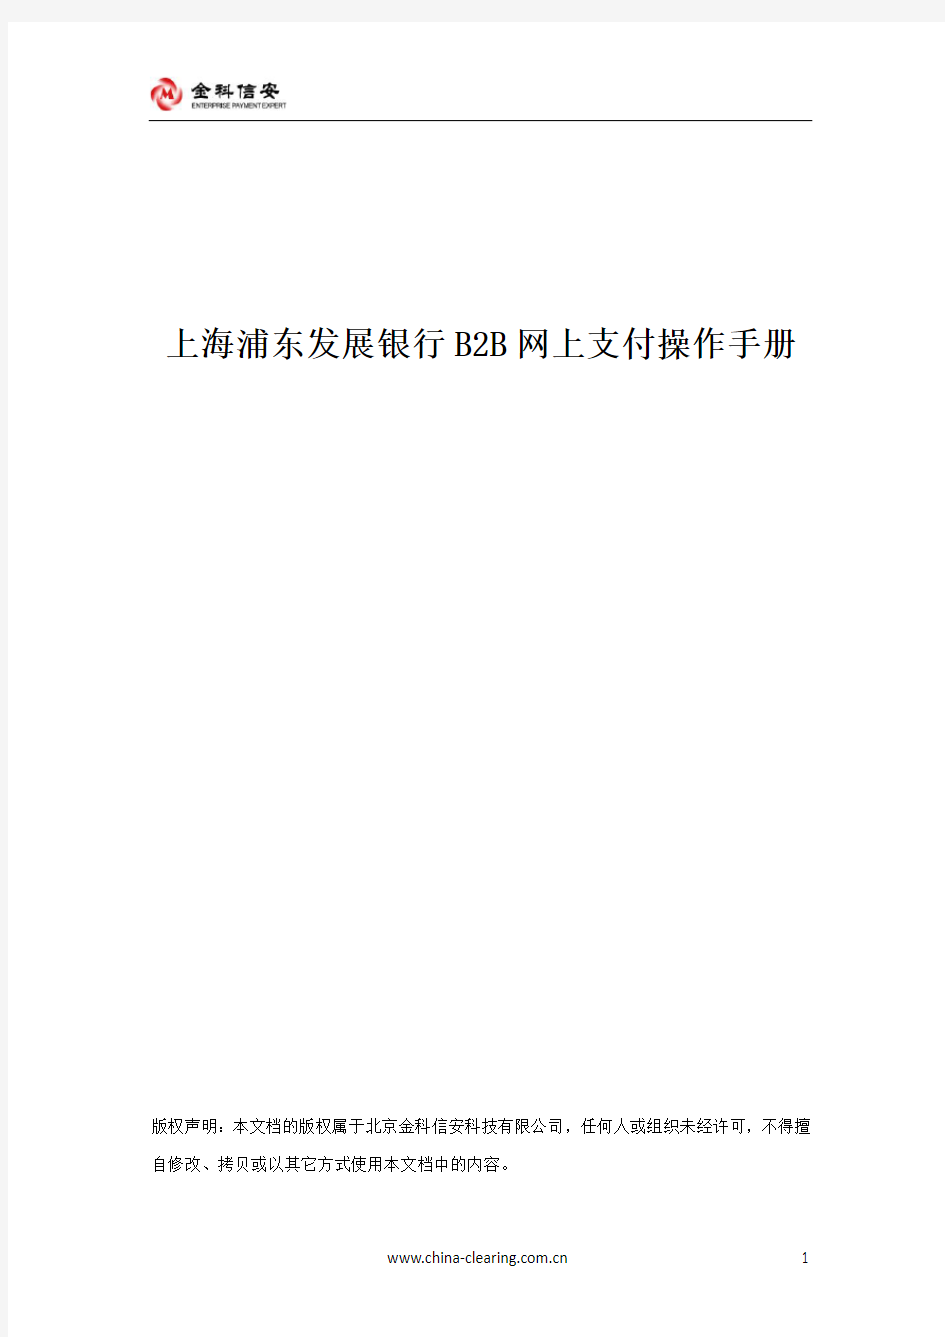 上海浦东发展银行B2B网上支付操作手册